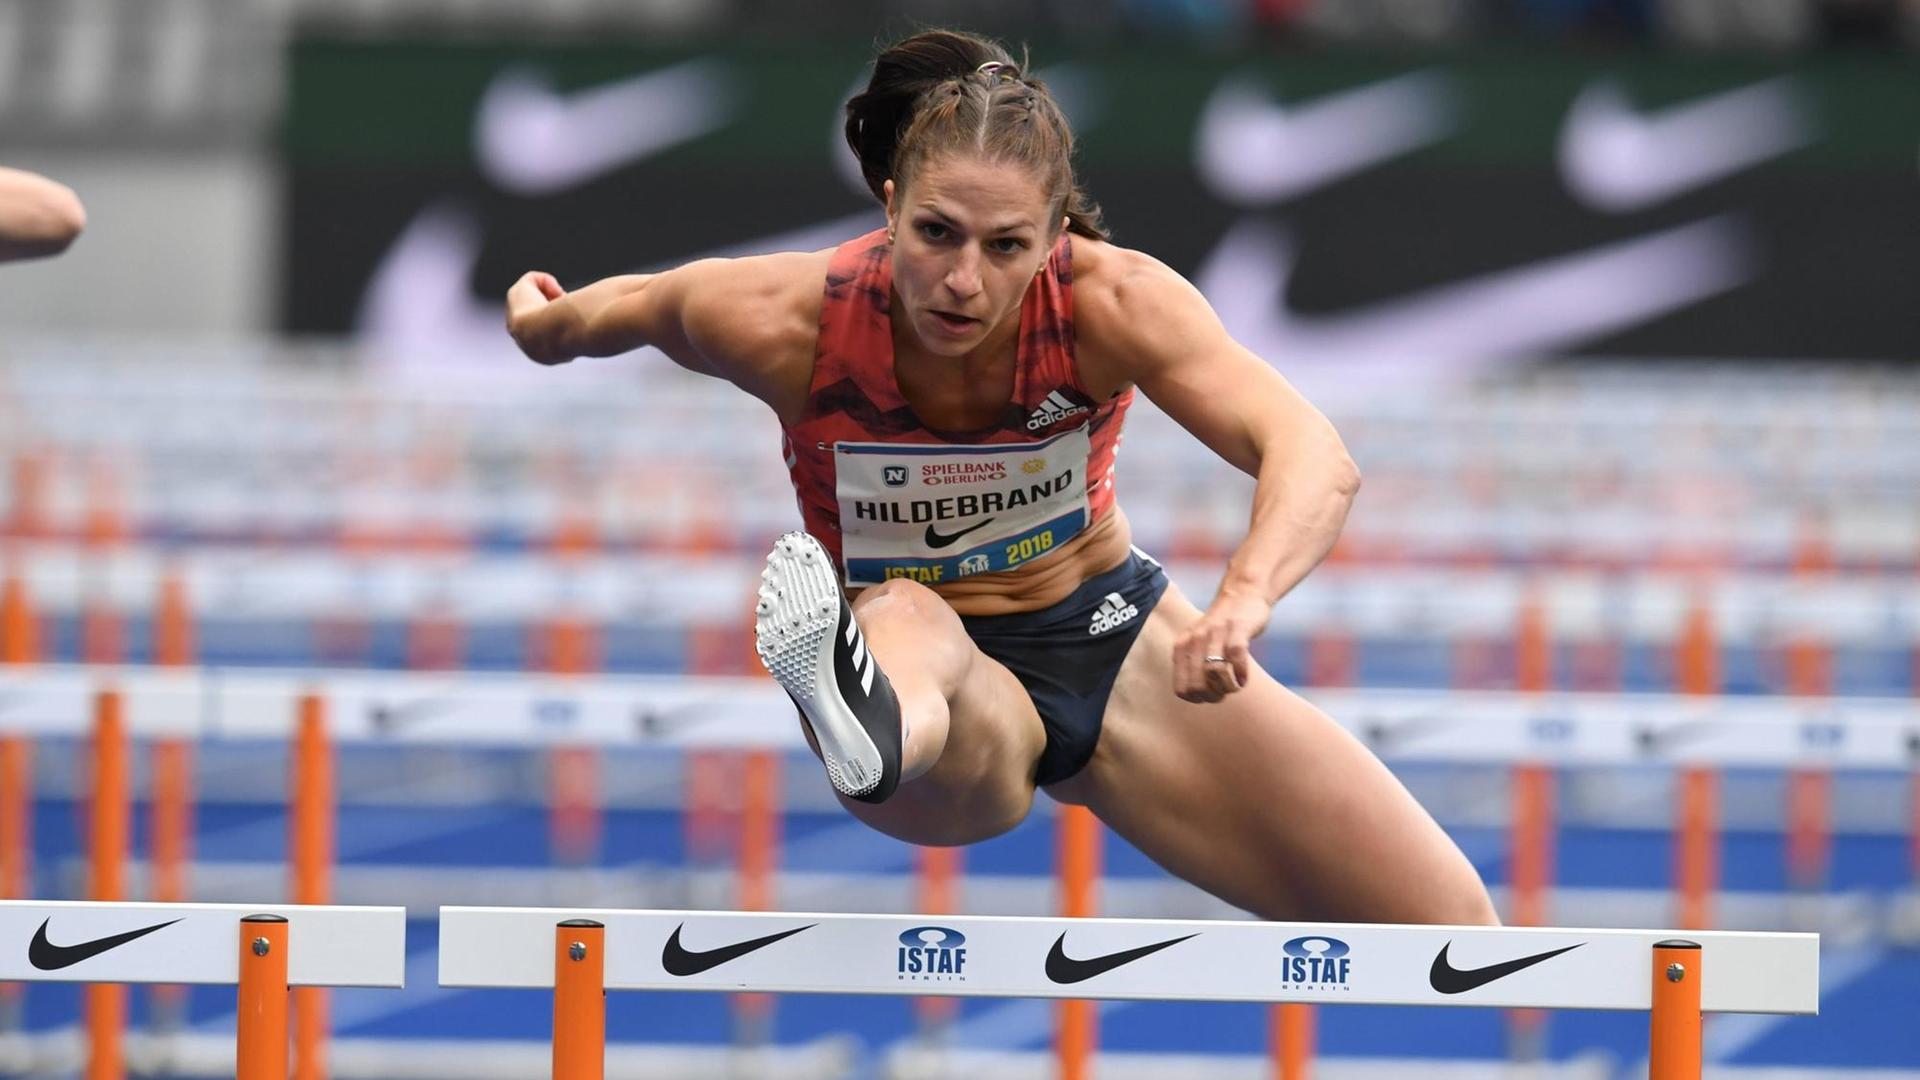 Berlin, 02.09.2018: Beim Internationalen Stadionfest Berlin (ISTAF) im Olympiastadion nimmt Nadine Hildebrand am Lauf über 100m Hürden teil.